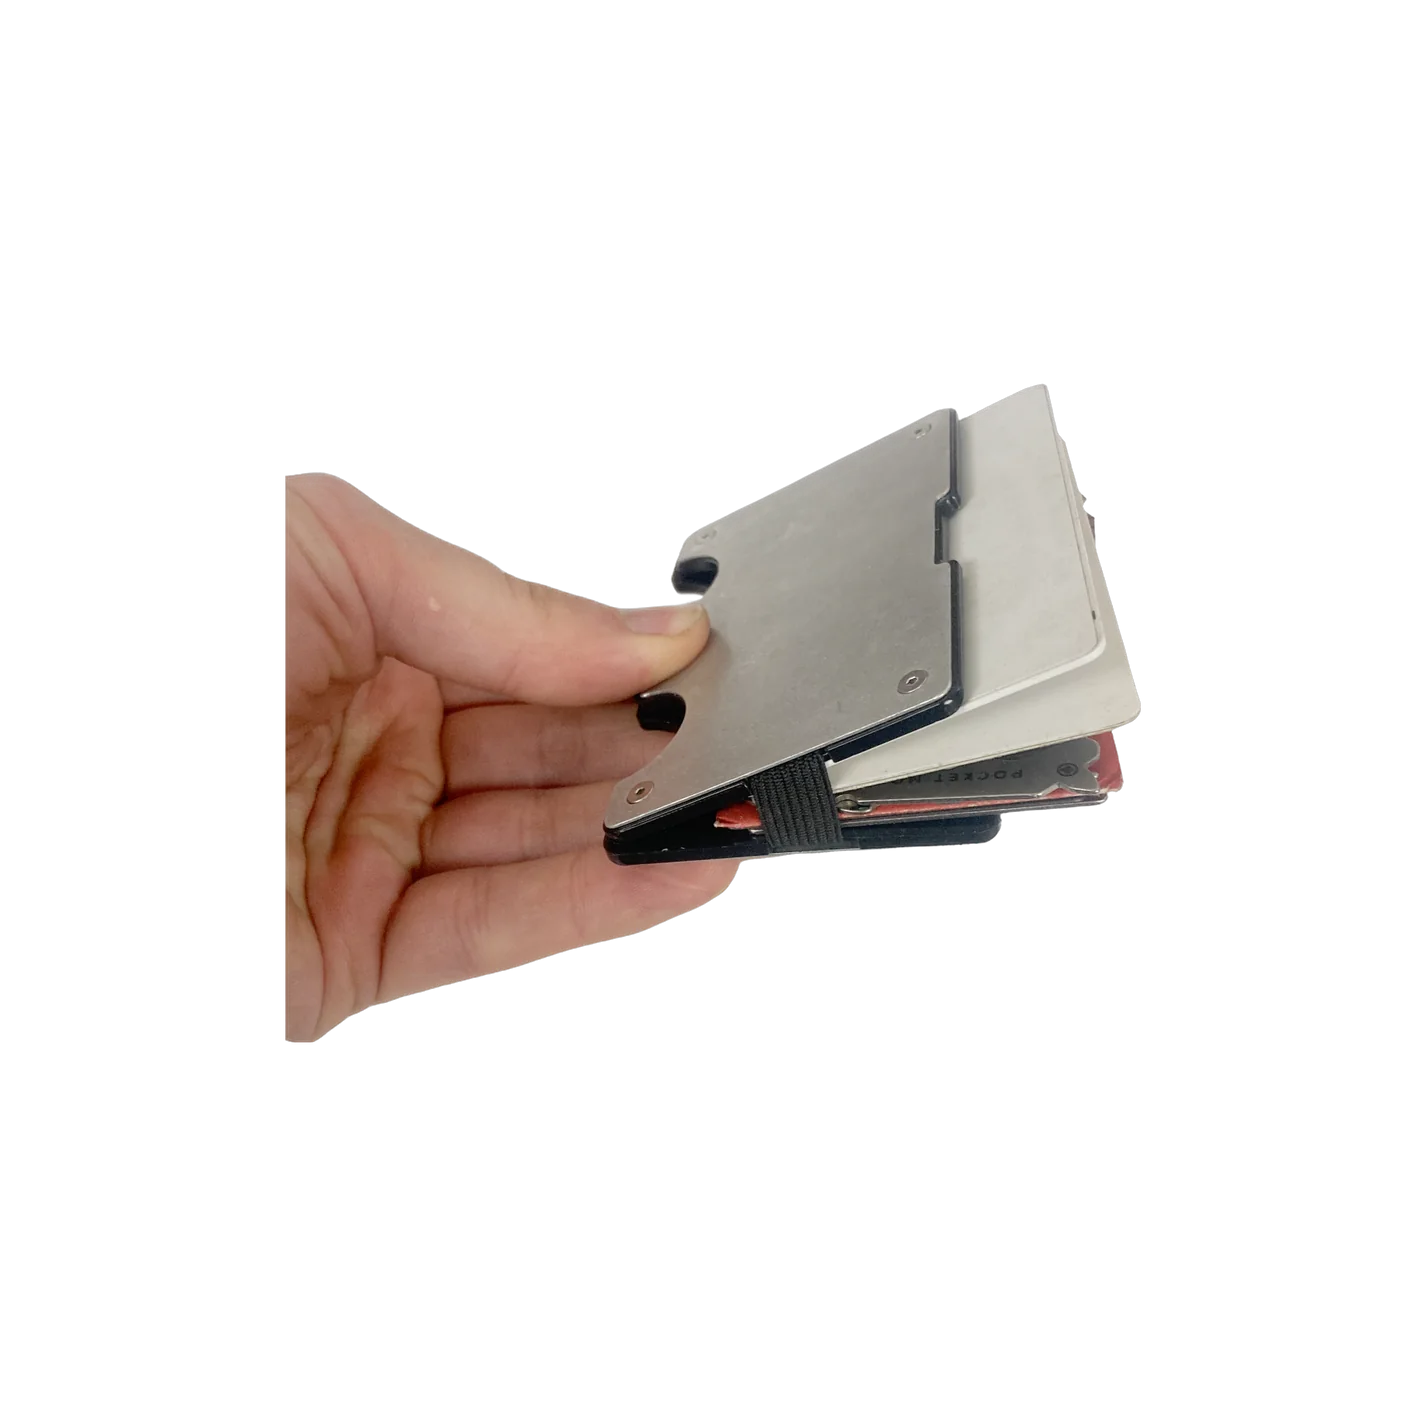 The Rift Wallet™ - Slim Metal RFID-Blocking